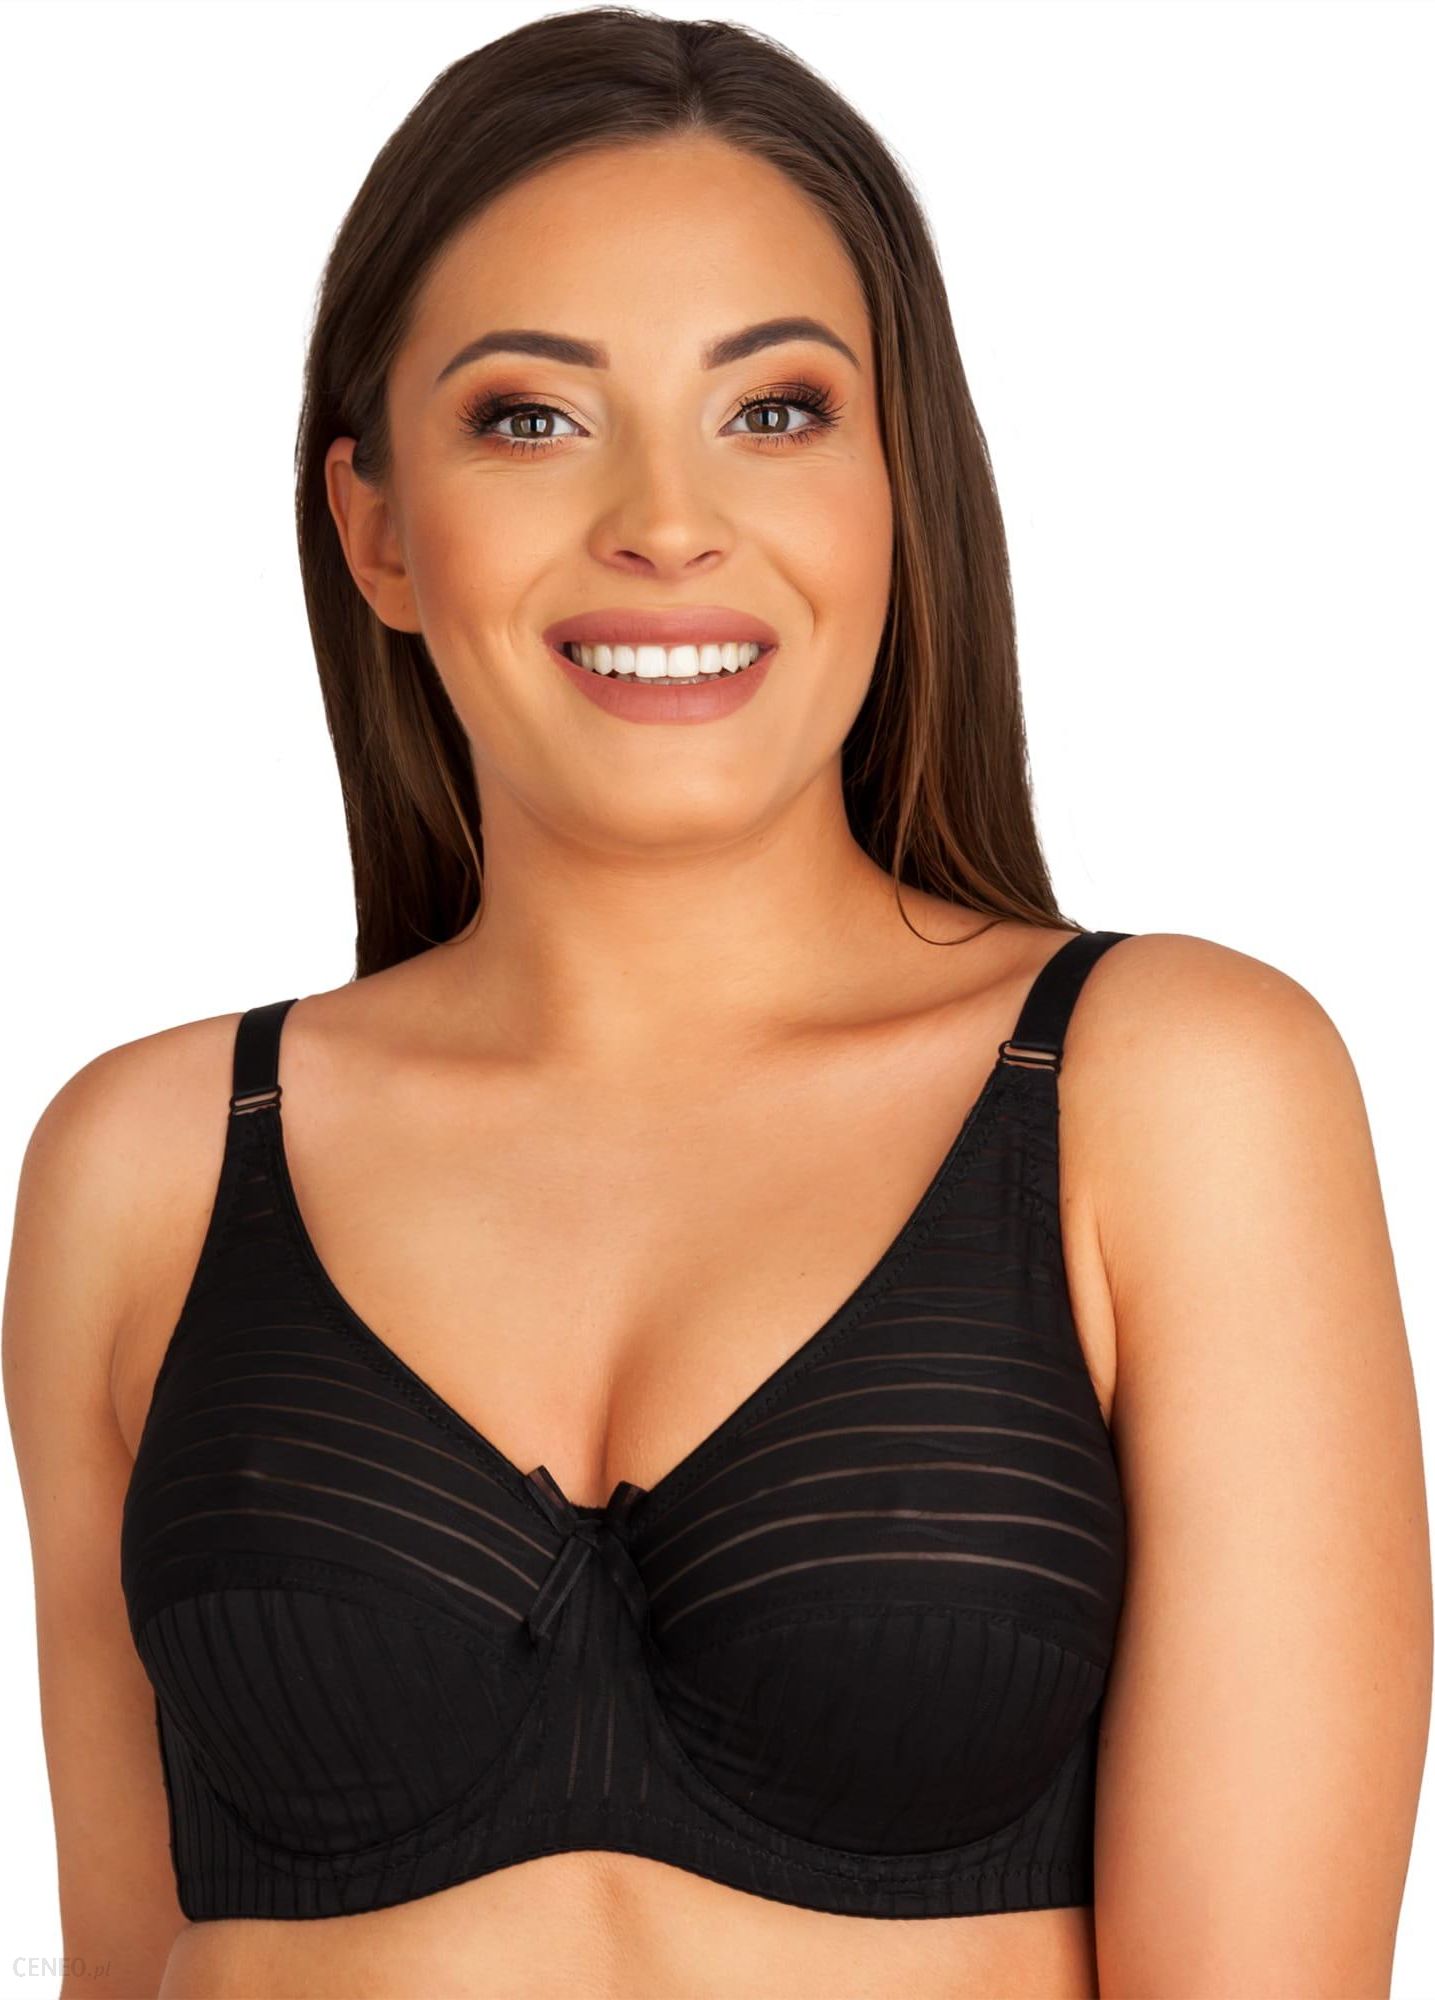 Medela Women's Sleep Bra - Seamless bra with stretch fabric, for